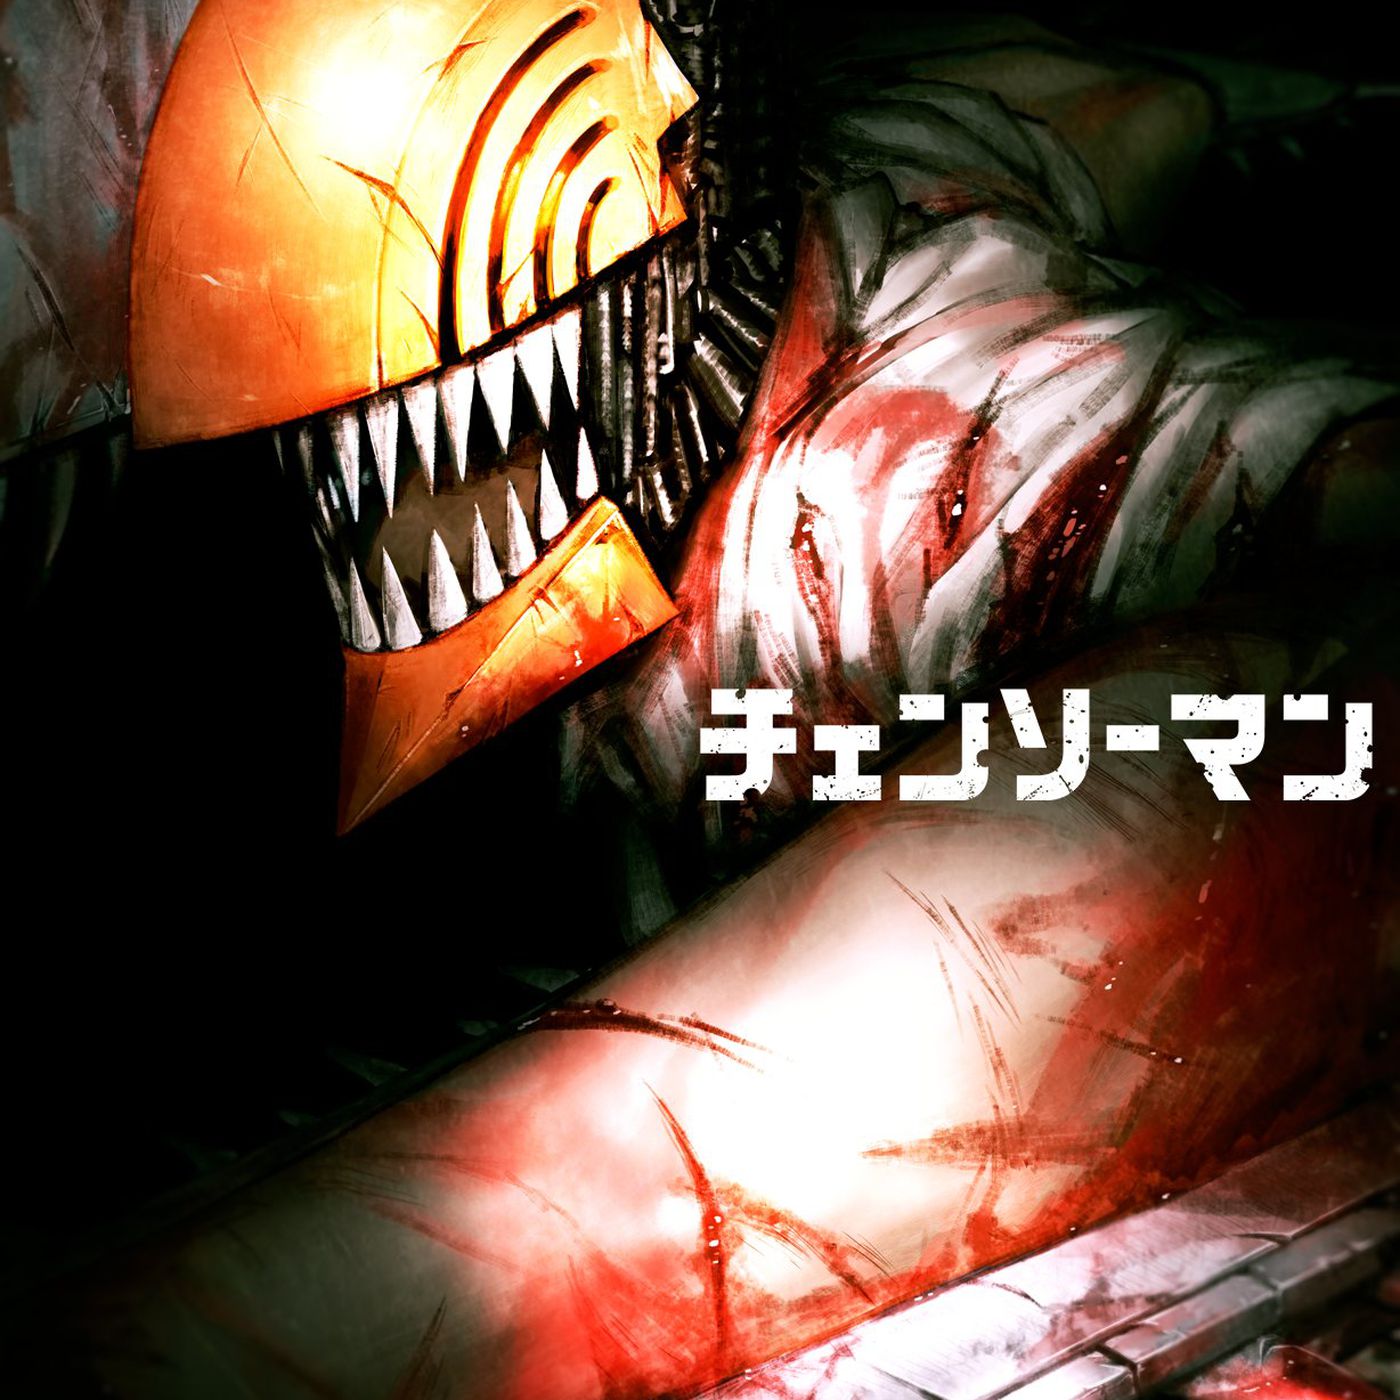 Chainsaw Man - Otakus acreditam que houve cena +18 no anime - AnimeNew